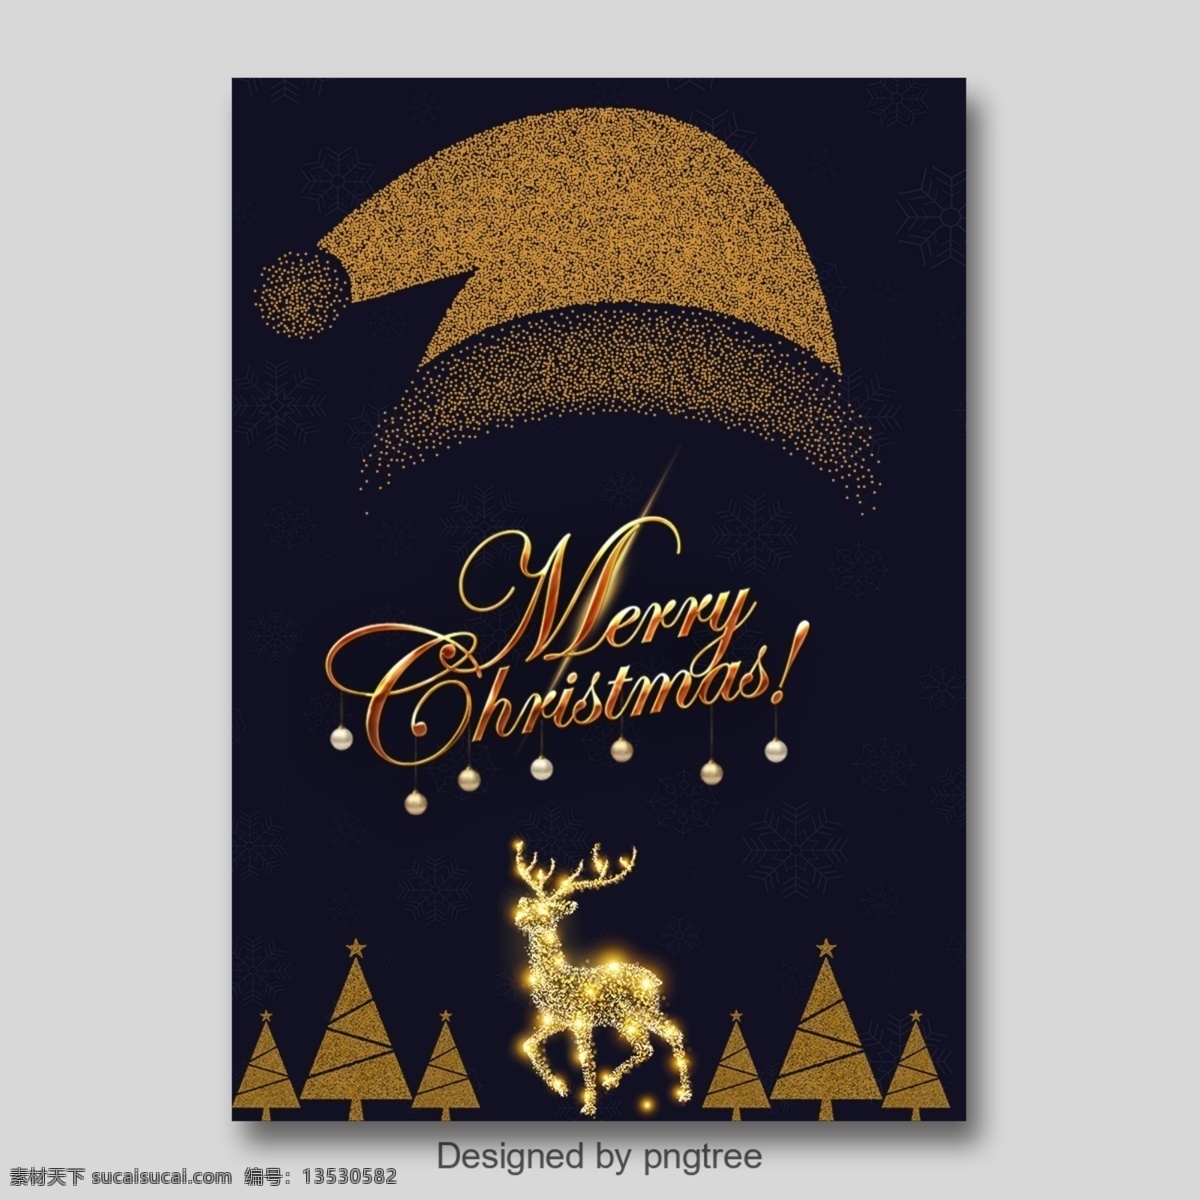 医学部 部门 圣诞节 海报 模板 2018 祝你圣诞快乐 节 帽子 圣诞 圣诞树 丝袜 有蓝色背景